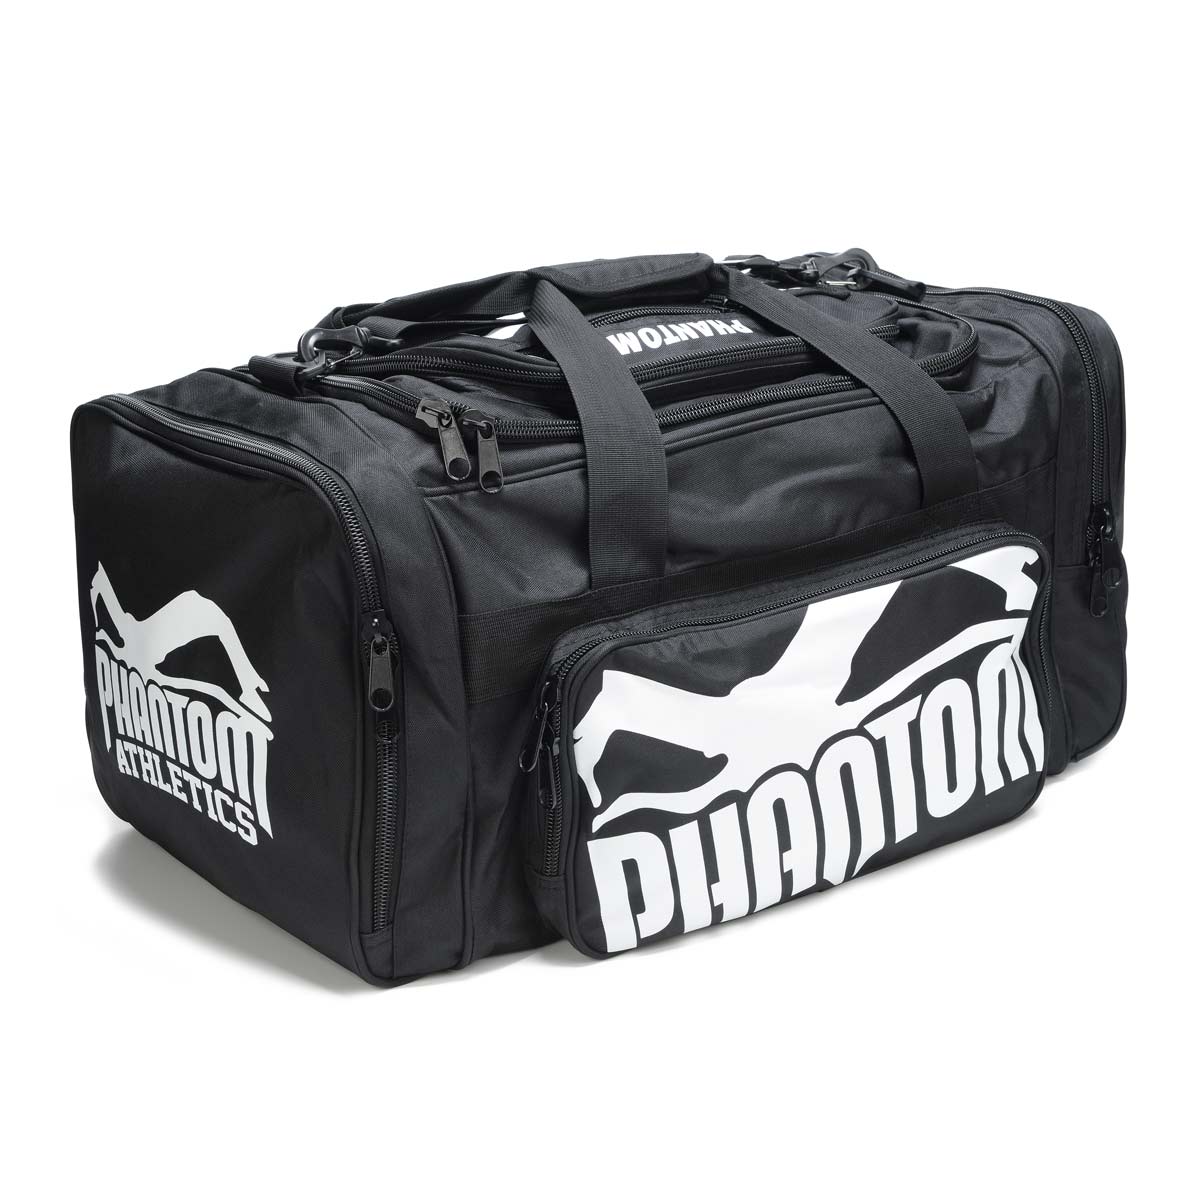 Phantom trenažna torba Team s puno prostora za odlaganje vaše opreme za borilačke vještine